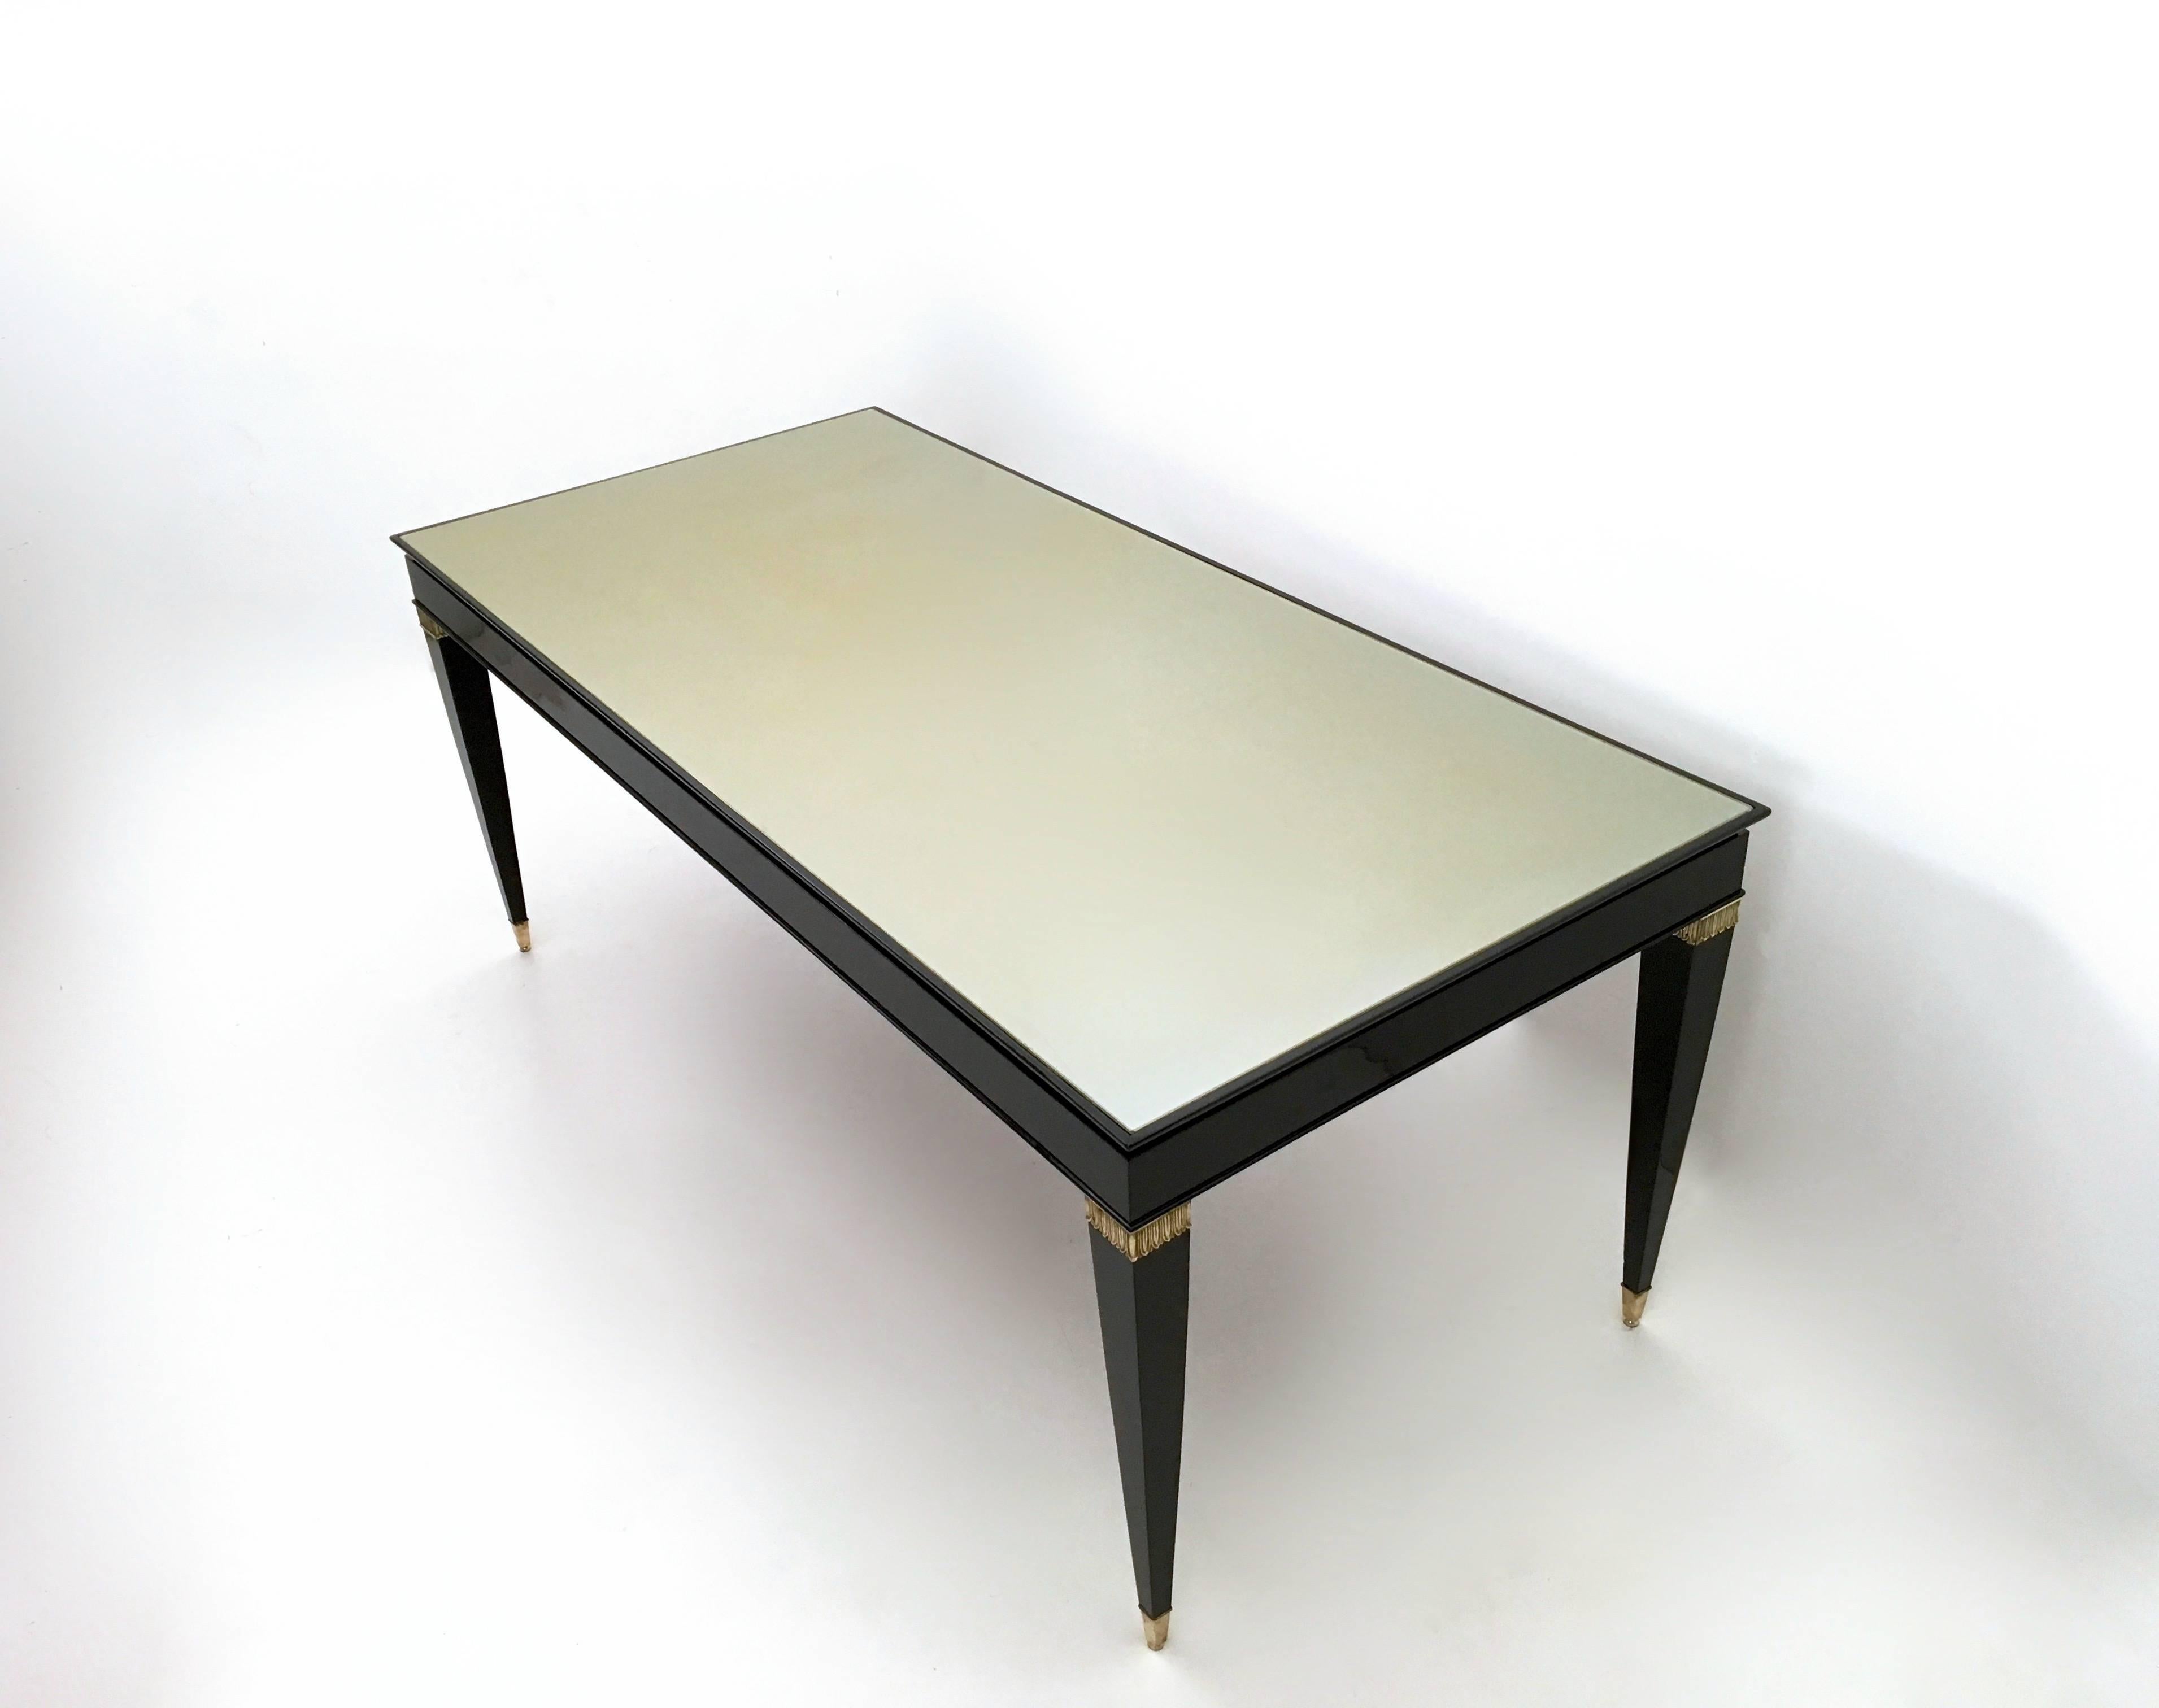 Hergestellt in Italien, 1950er Jahre.
Dieser Tisch ist aus schwarz lackierter Buche gefertigt und verfügt über Fußkappen und Details aus Messing sowie eine taupefarbene, hinterlackierte Glasplatte.
Da es sich um einen Vintage-Artikel handelt, kann